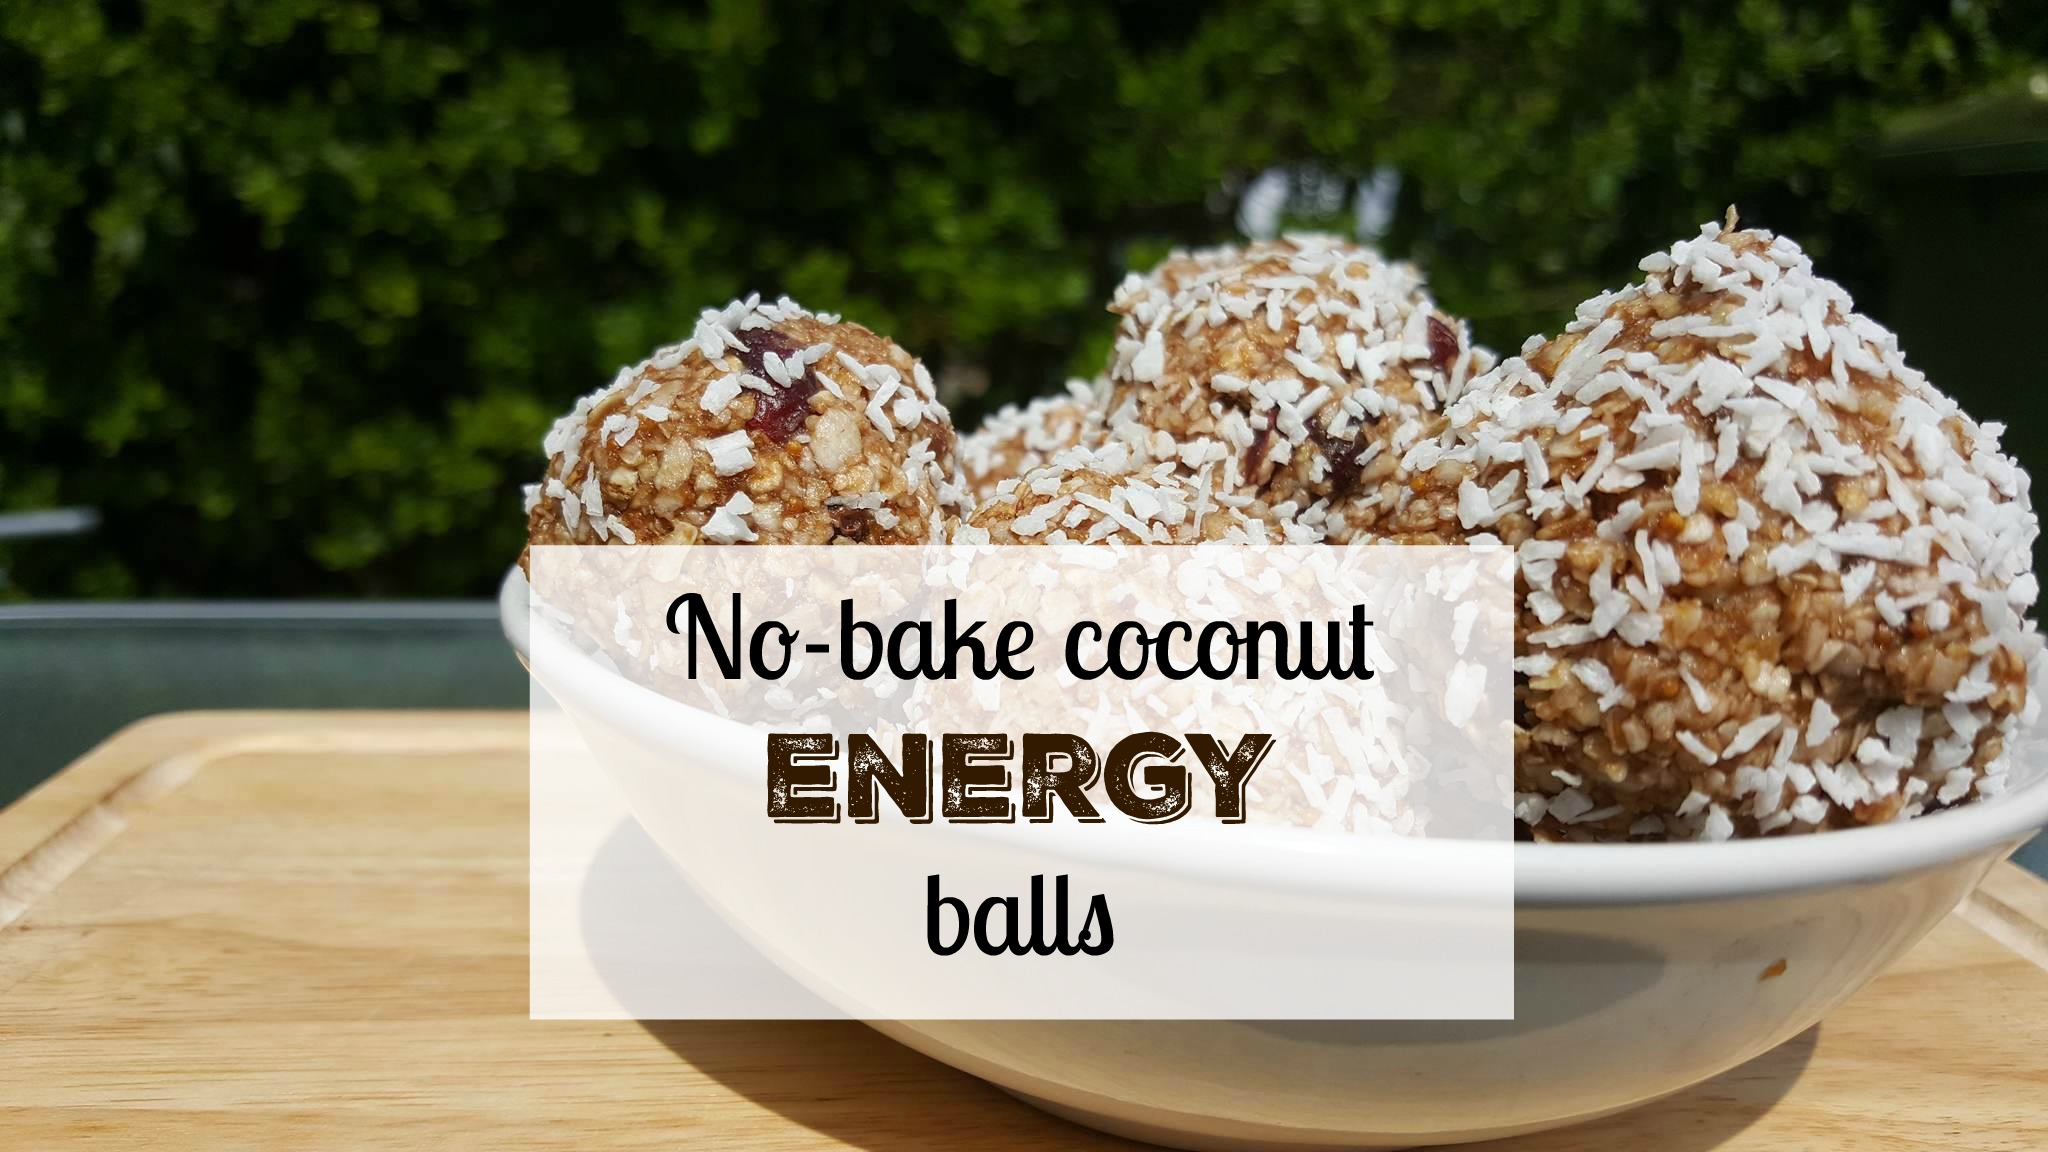 Coconut energy balls